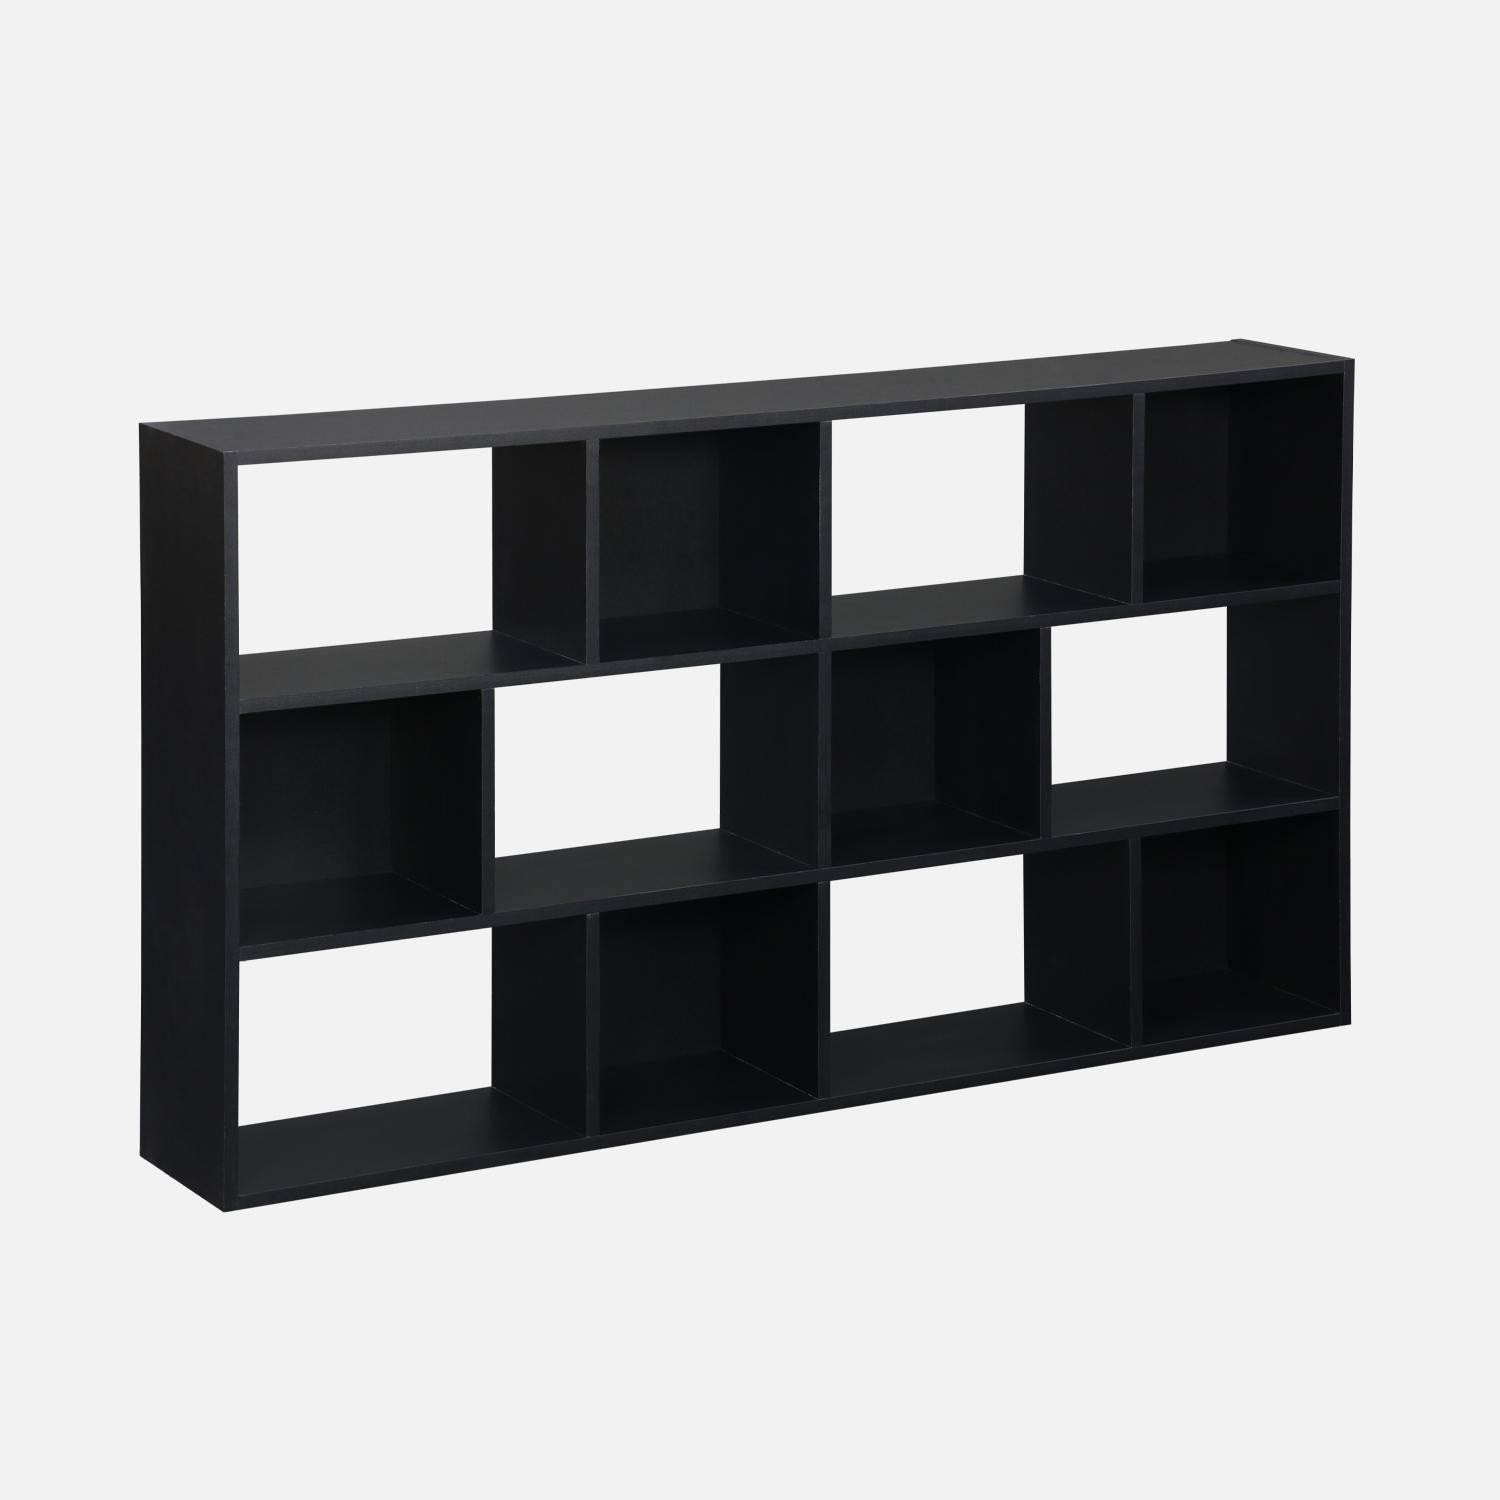 Asymmetrische zwarte design boekenkast, Pieter, 3 planken, 12 opbergvakken Photo5